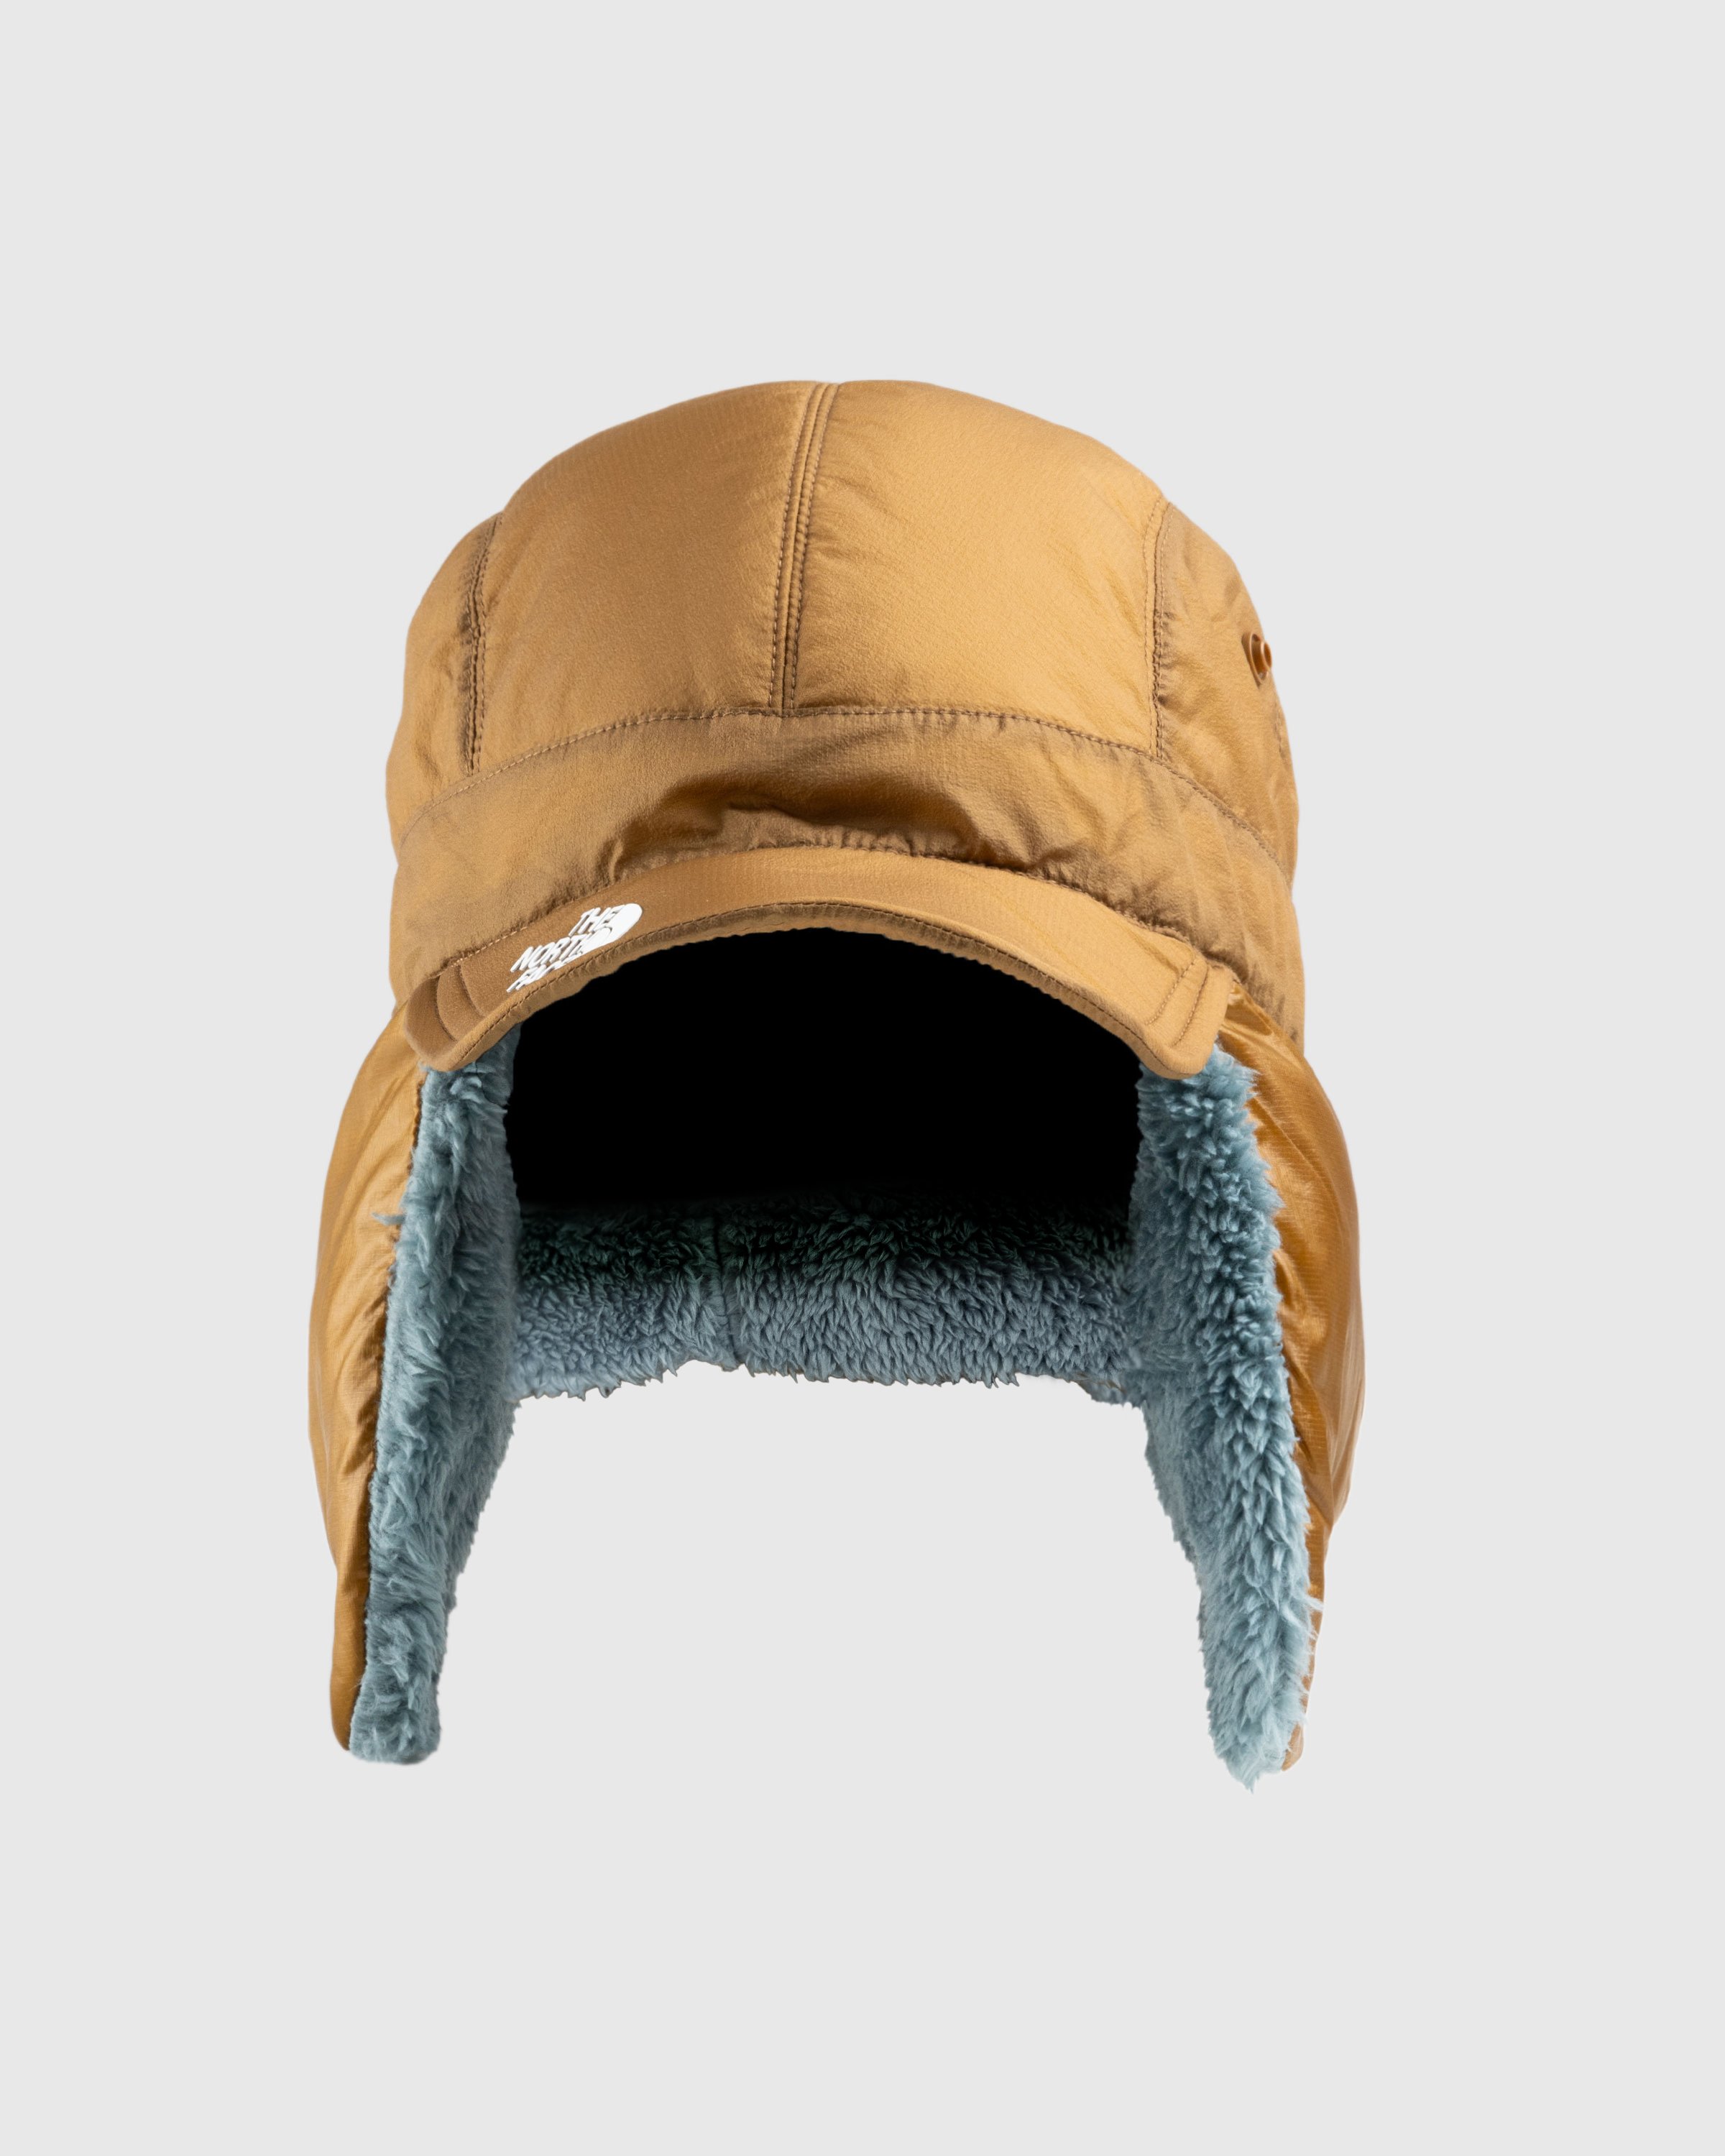 The North Face x UNDERCOVER - Soukuu Down Cap Bronze Brown/Concrete Gray - Accessories - Multi - Image 1